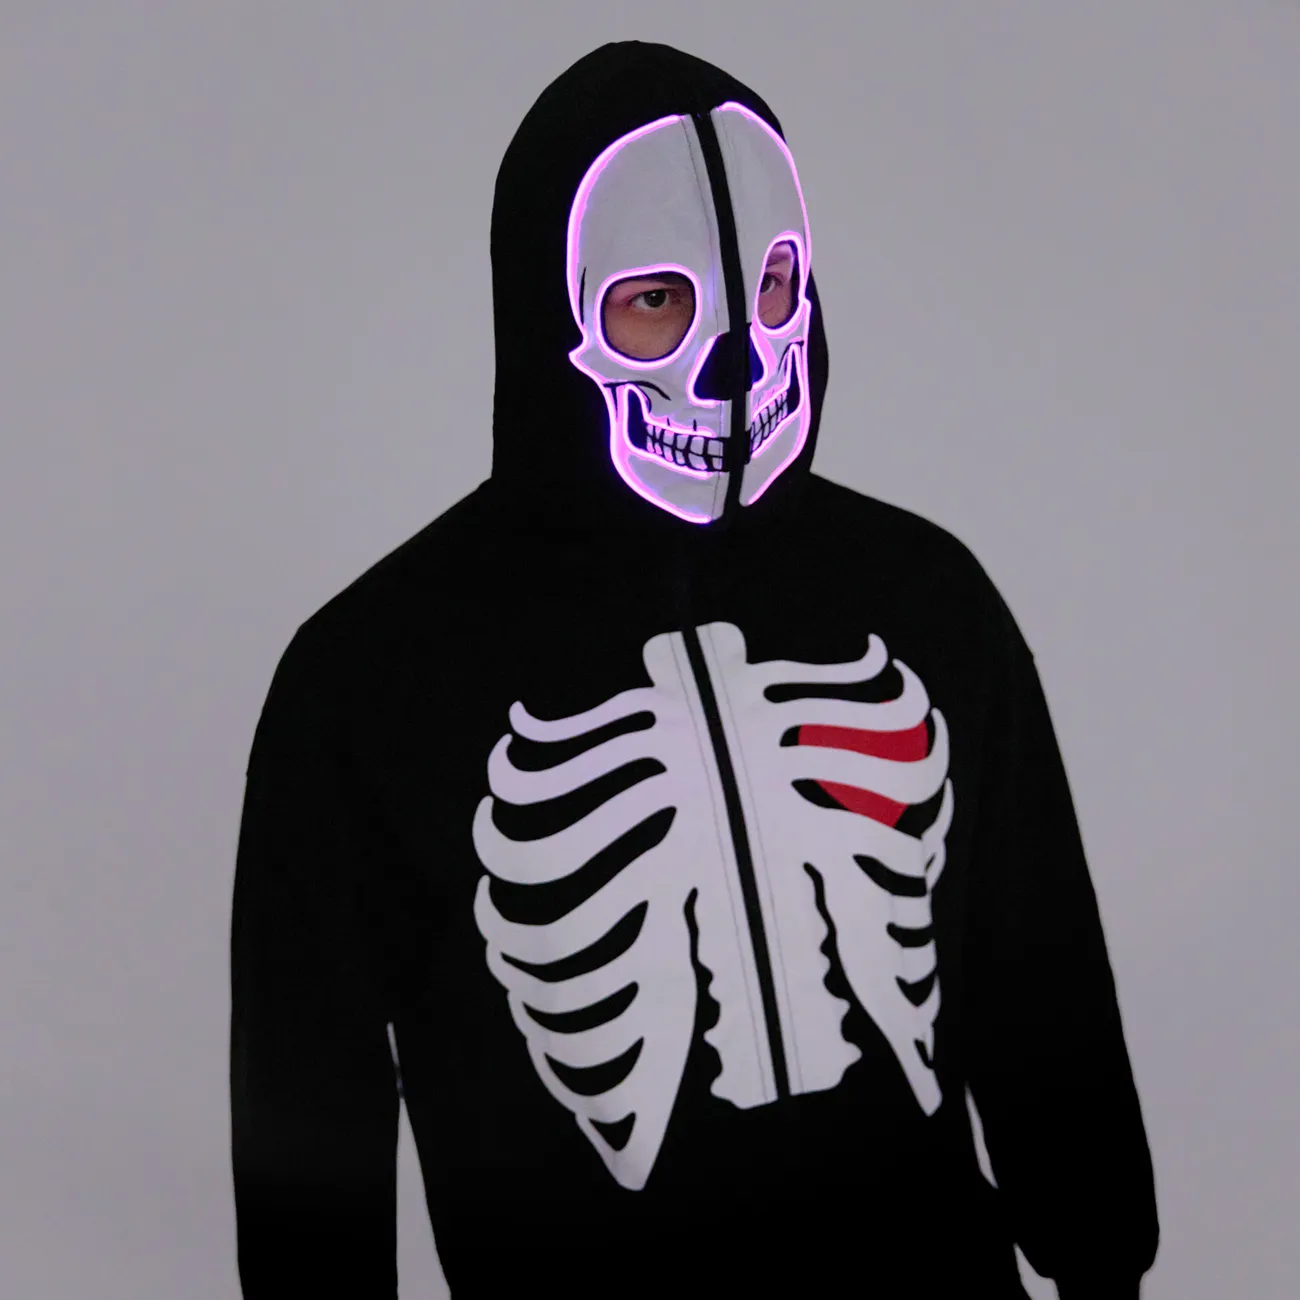 Go-Glow Halloween Jaqueta Adulto Iluminante com Esqueleto de Cabeça Iluminado, Incluindo Controlador (Built-In Battery) Preto big image 1